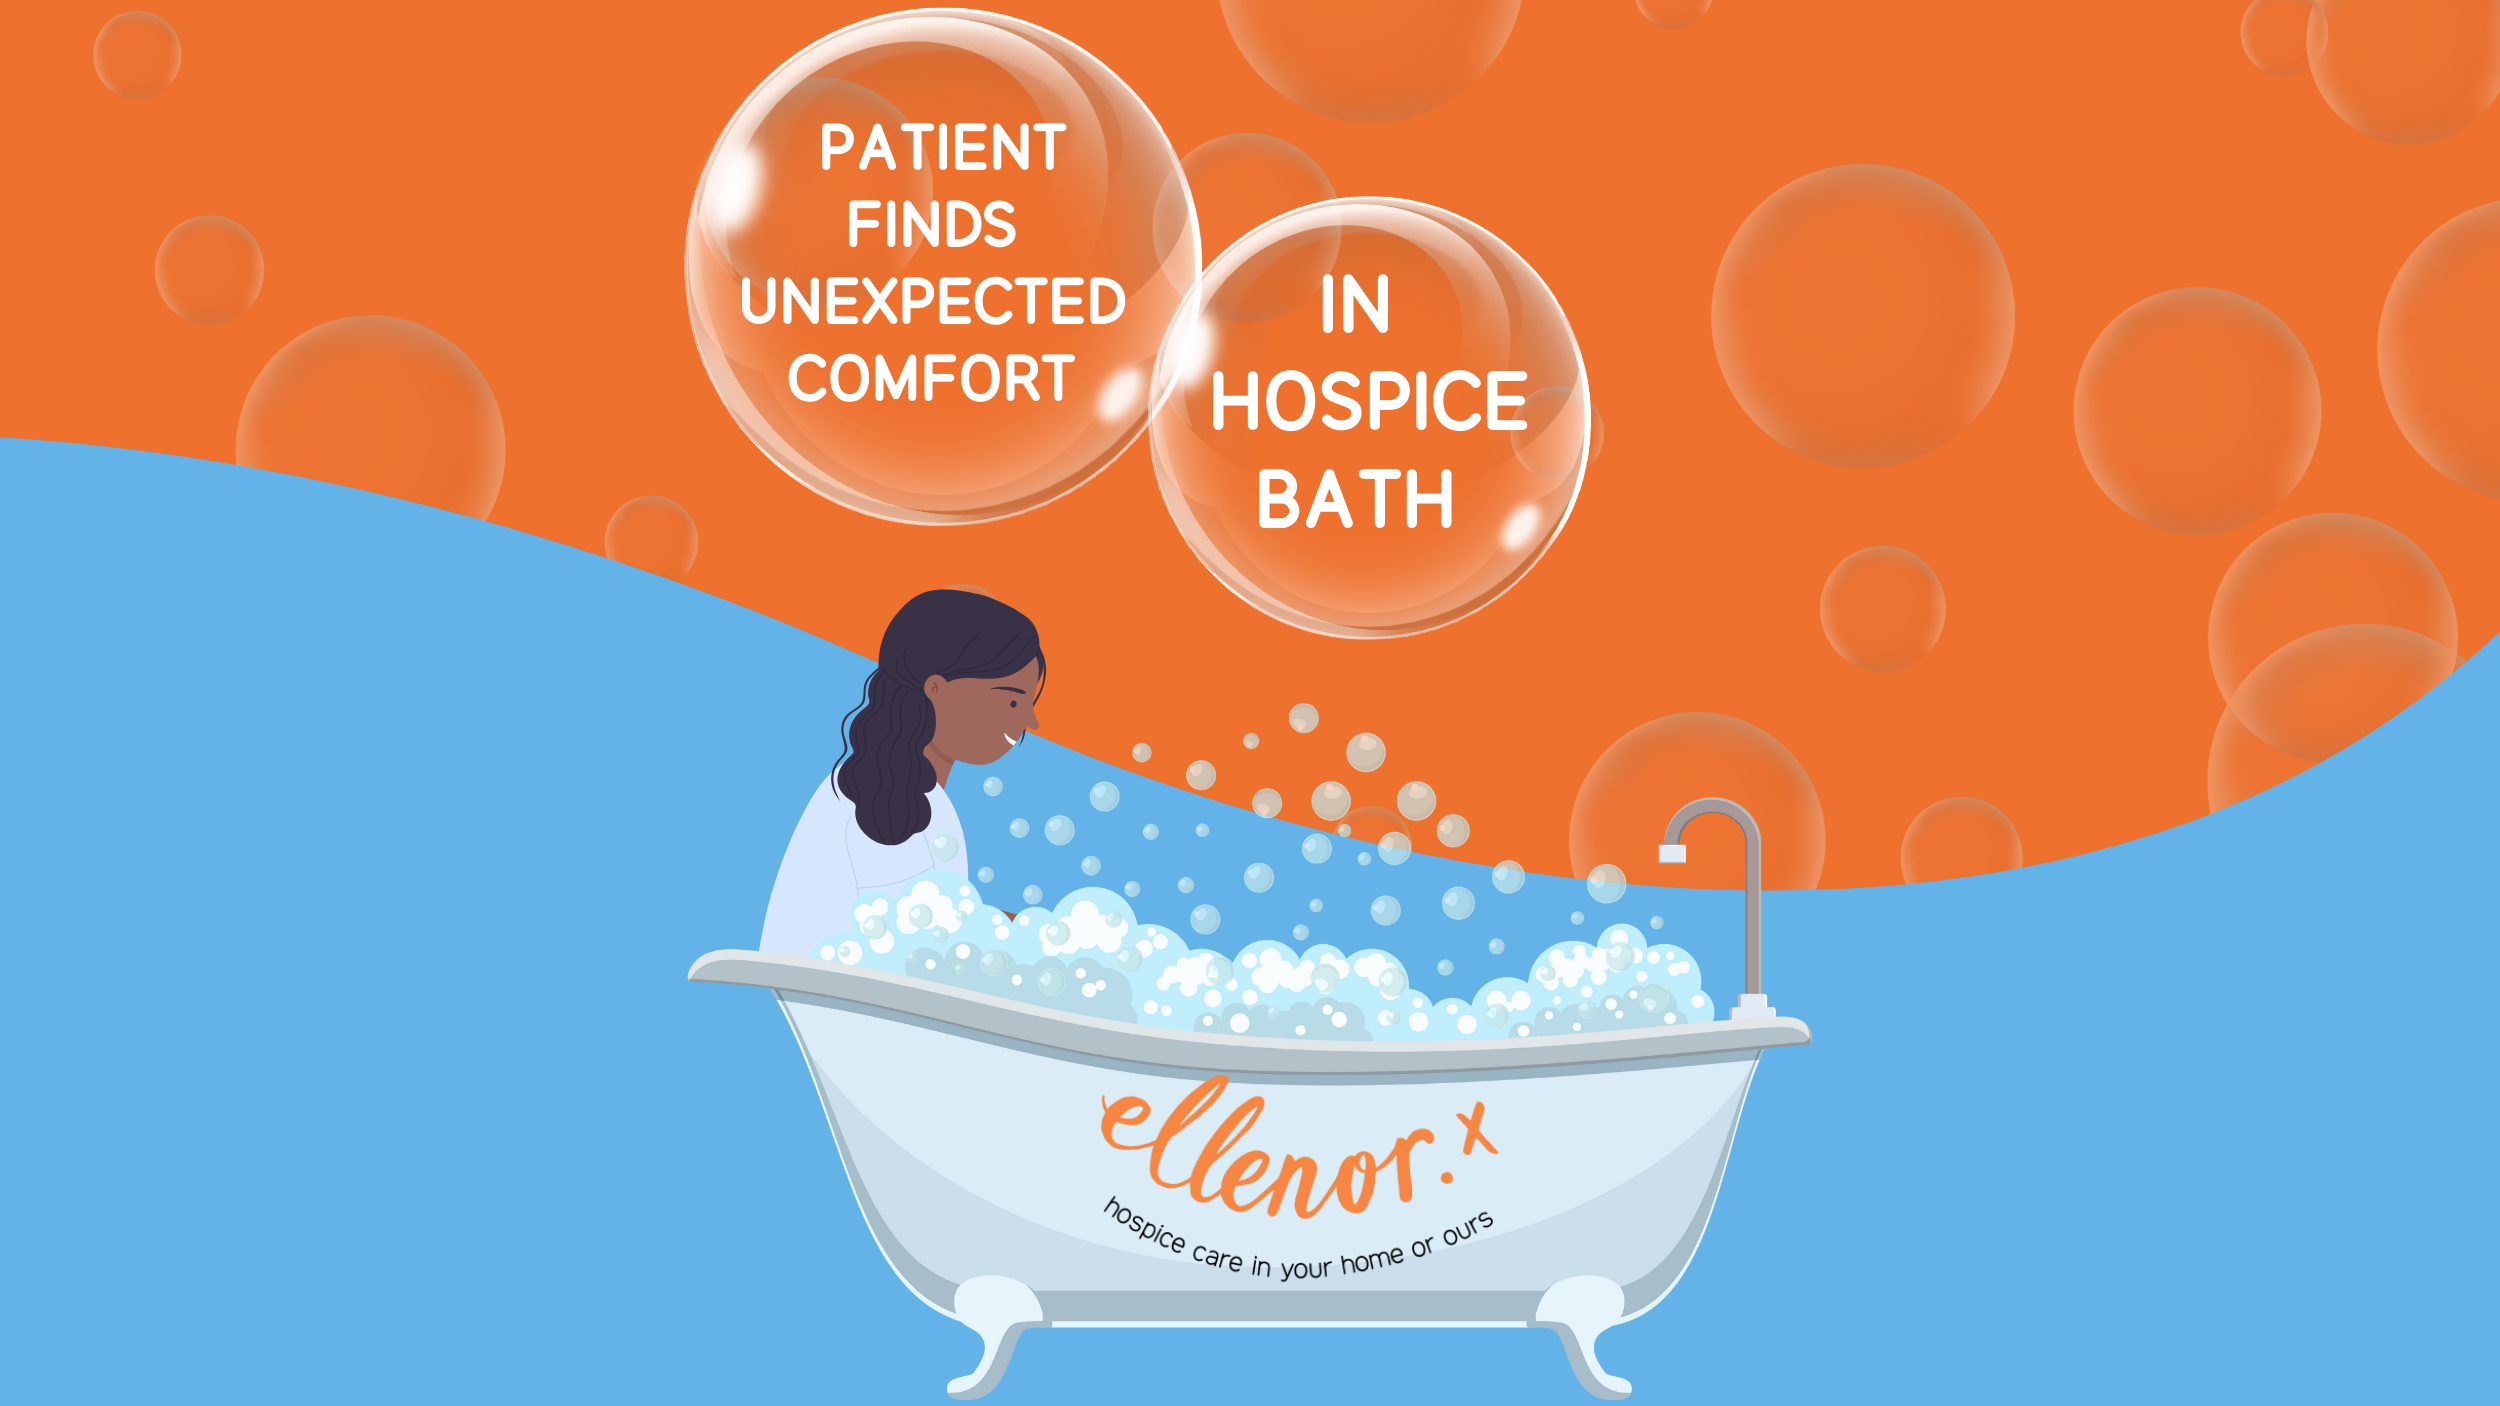  ellenor Wellbeing Patient Finds Unexpected Comfort In Hospice Bath